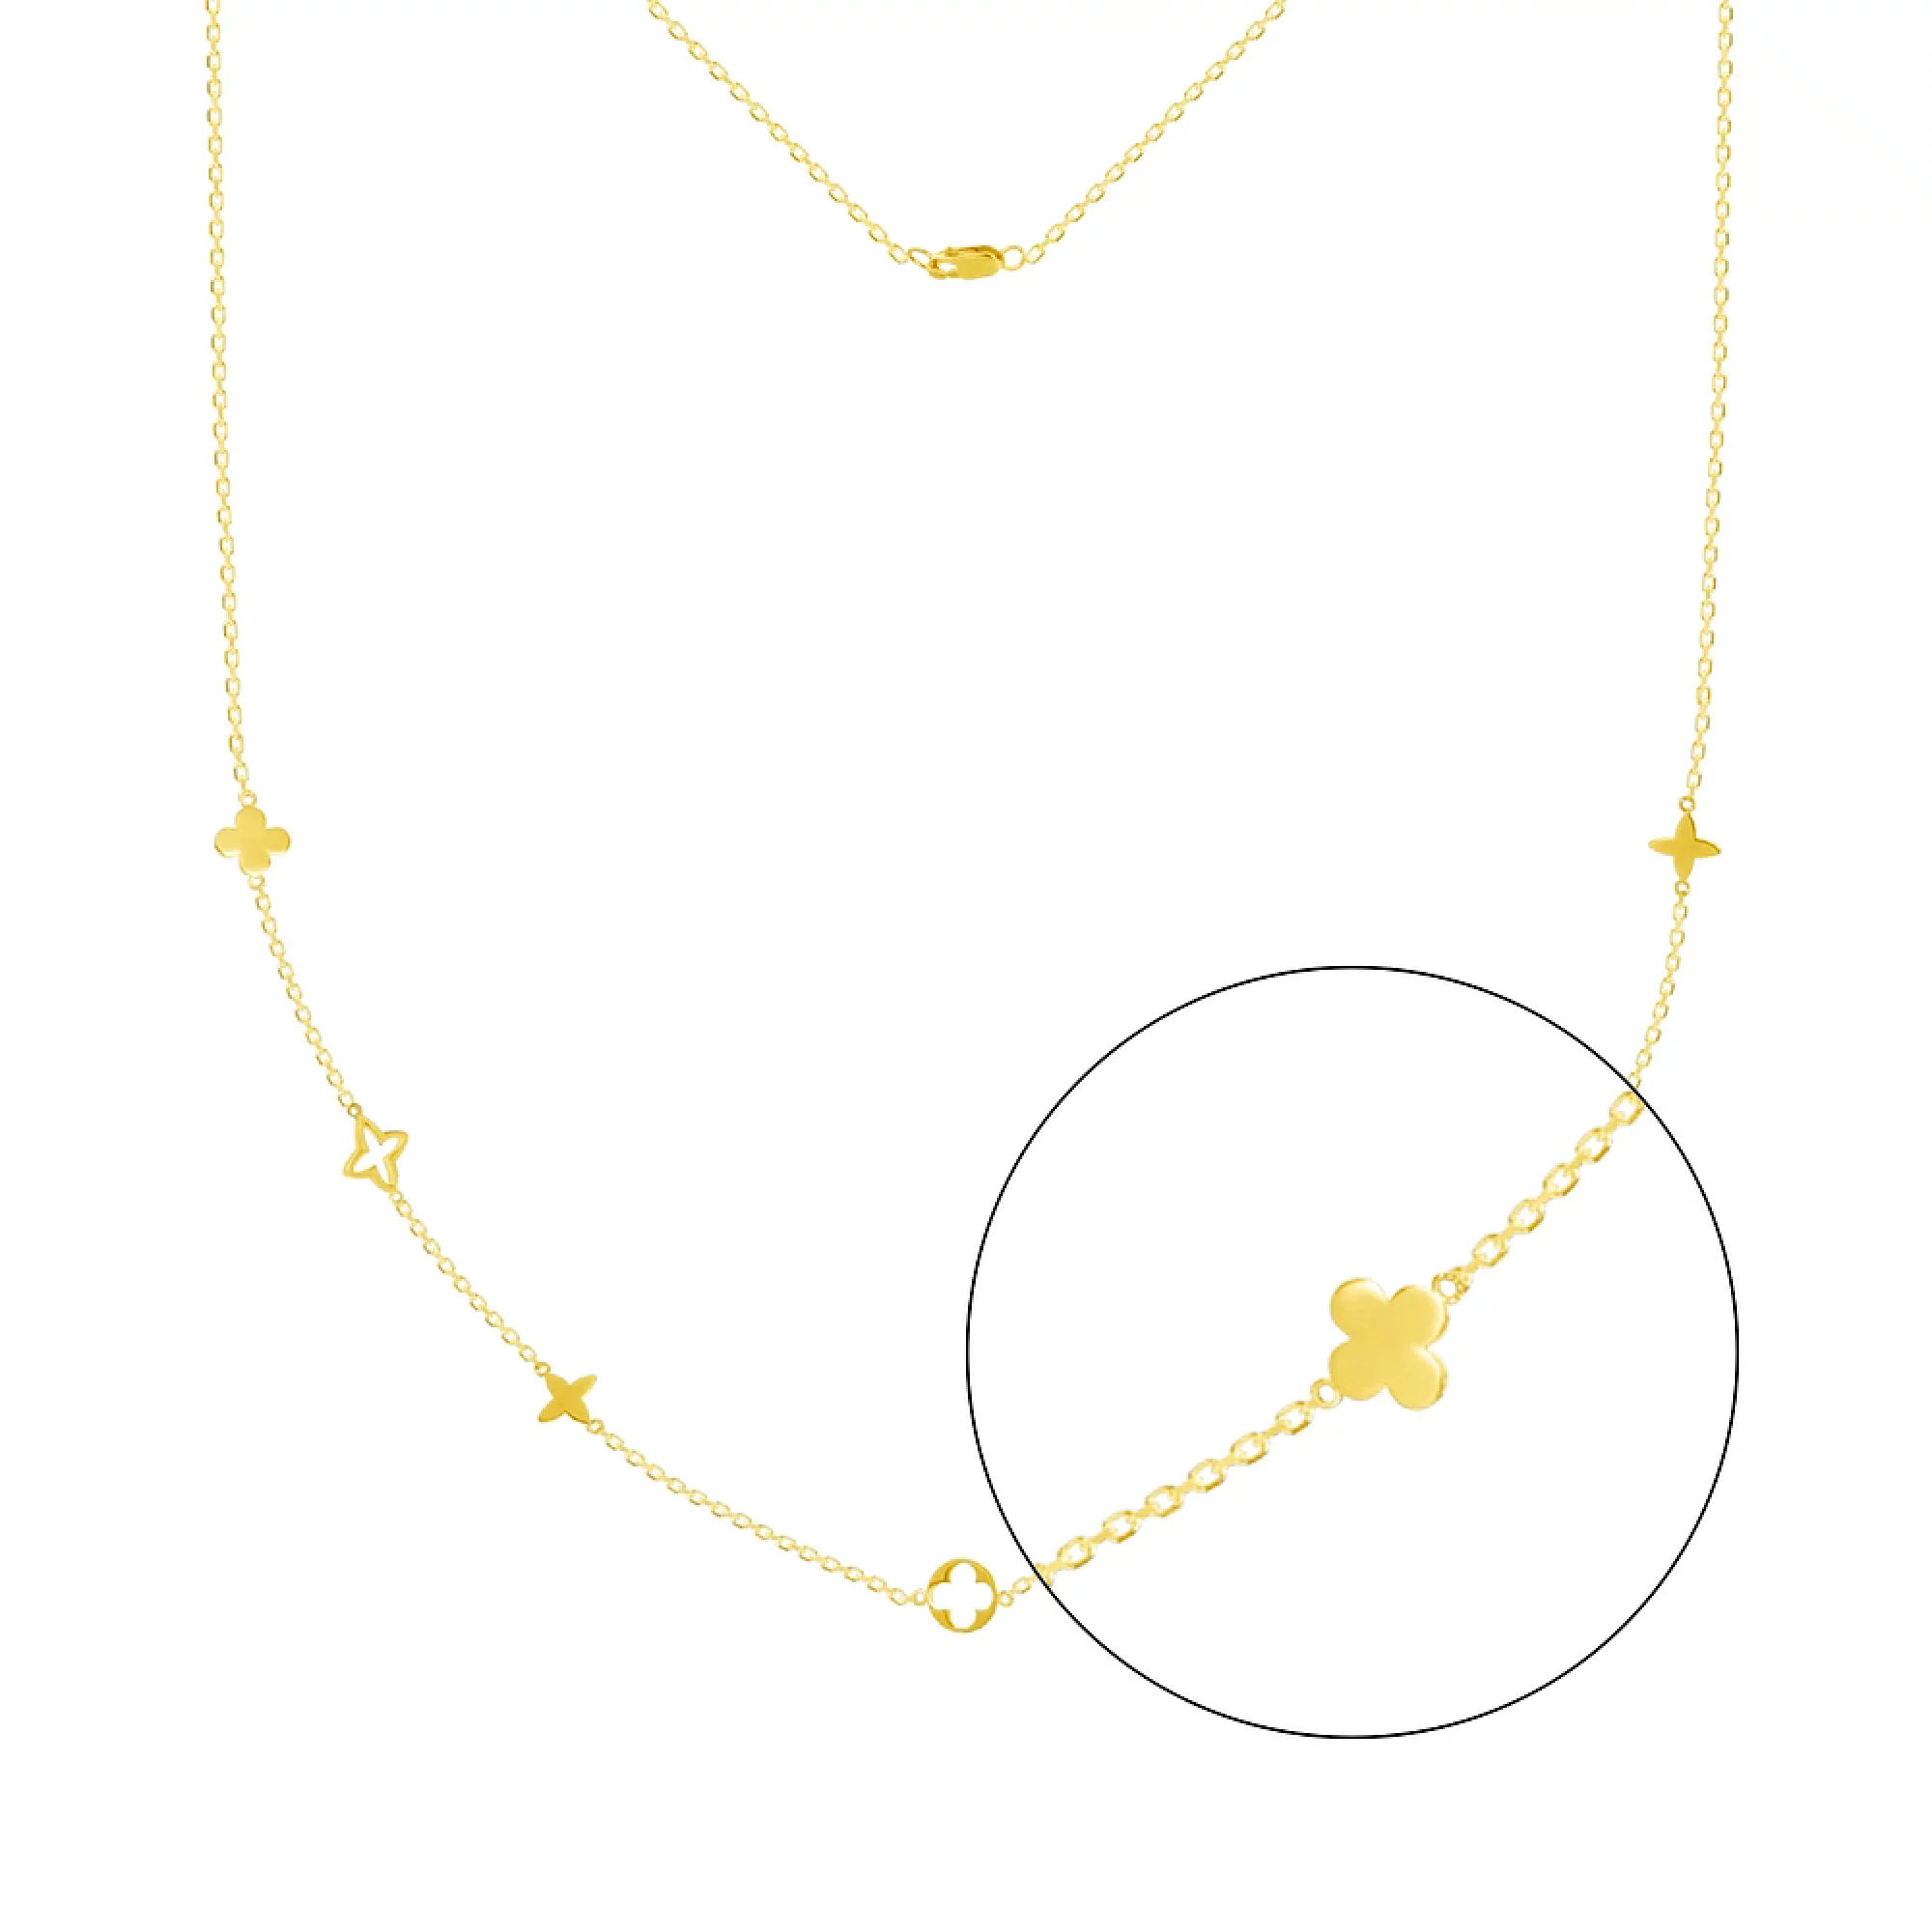 Колье из лимонного золота в Якорном плетении - 1095011 – изображение 1